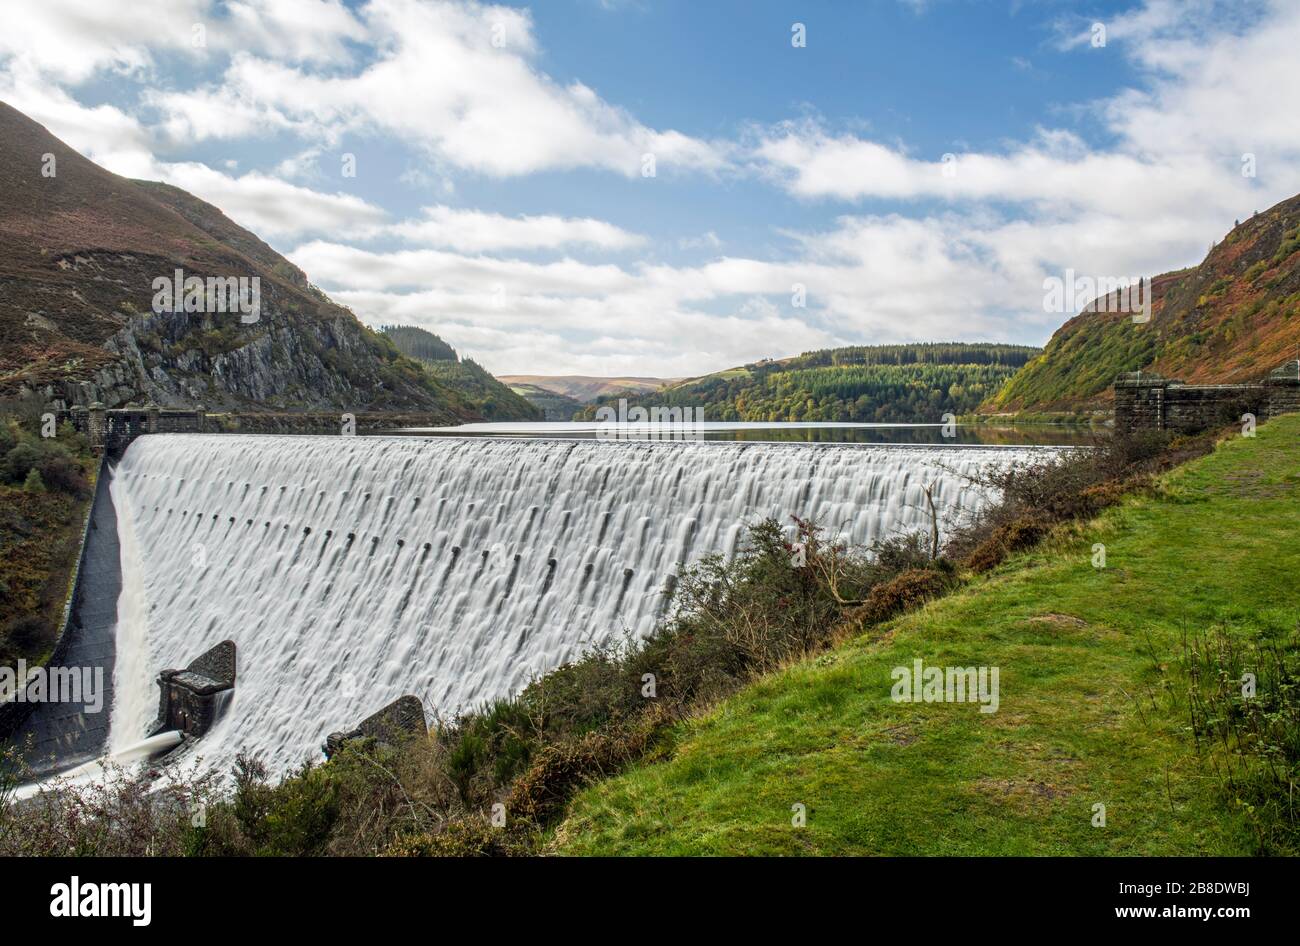 La diga di Caban Coch nella valle di Elan. Fotografato dopo la pioggia torrenziale con l'acqua che cade sopra la diga. Foto Stock